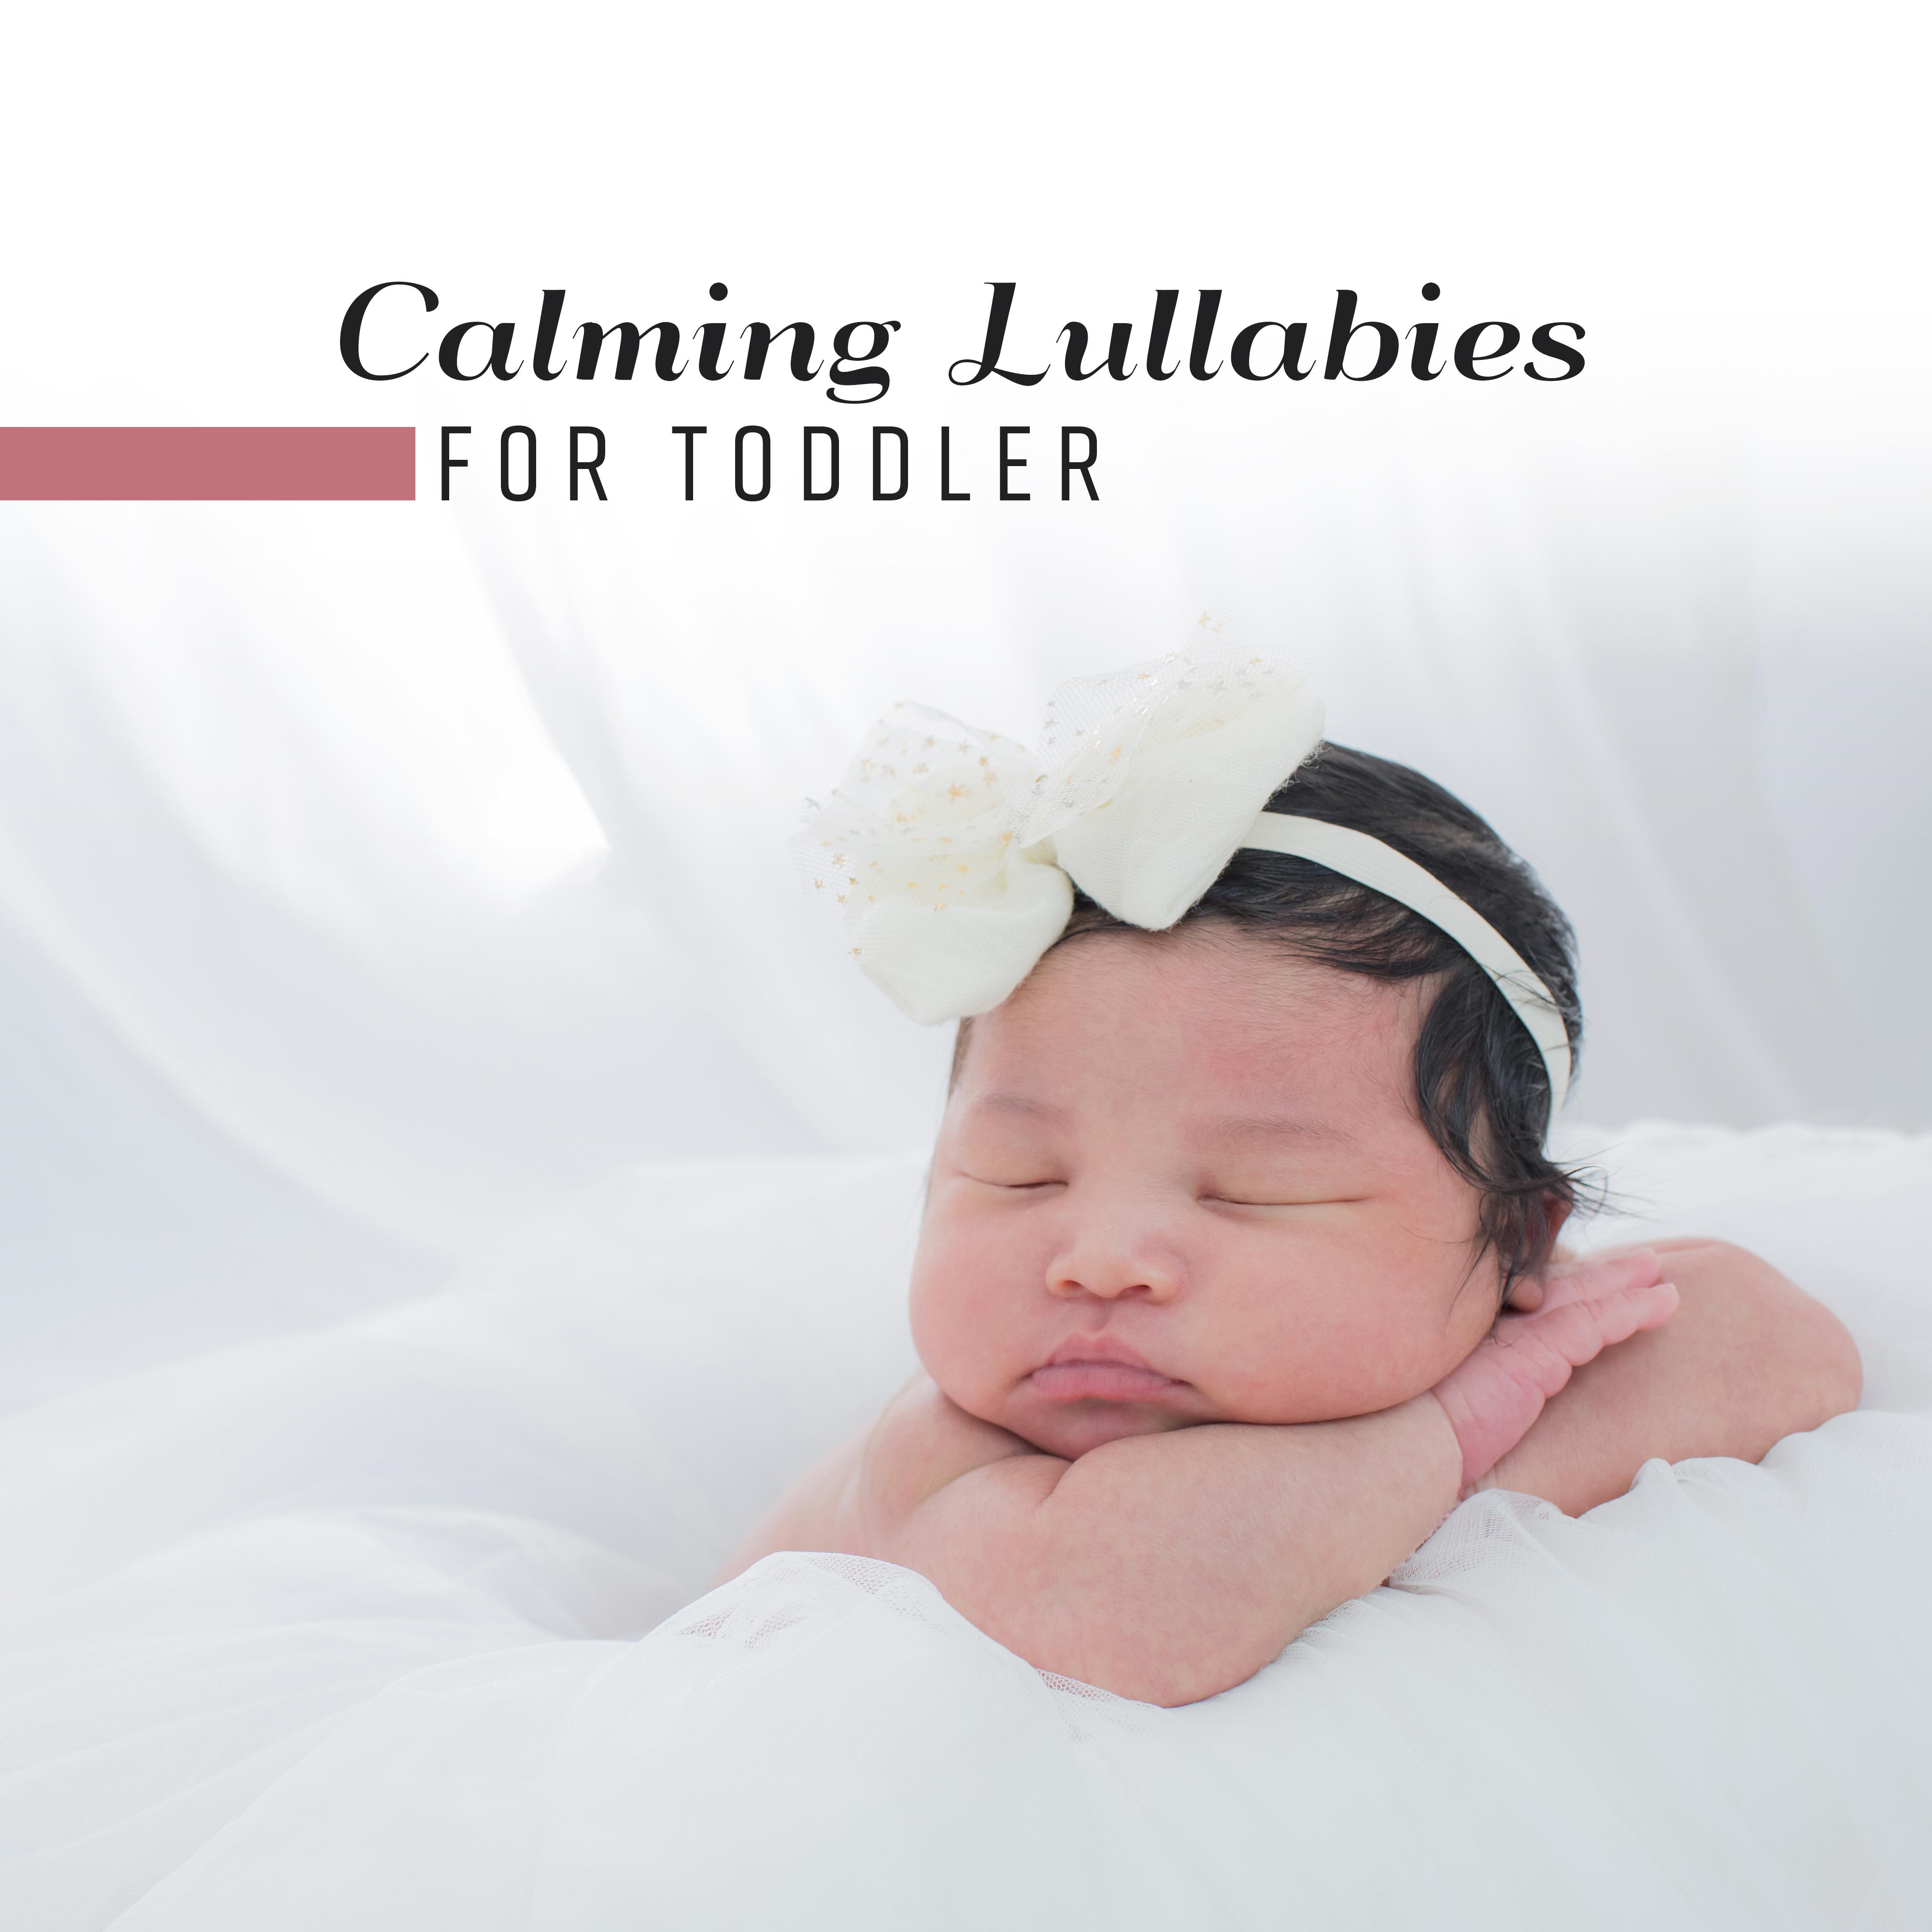 Calming Lullabies for Toddler